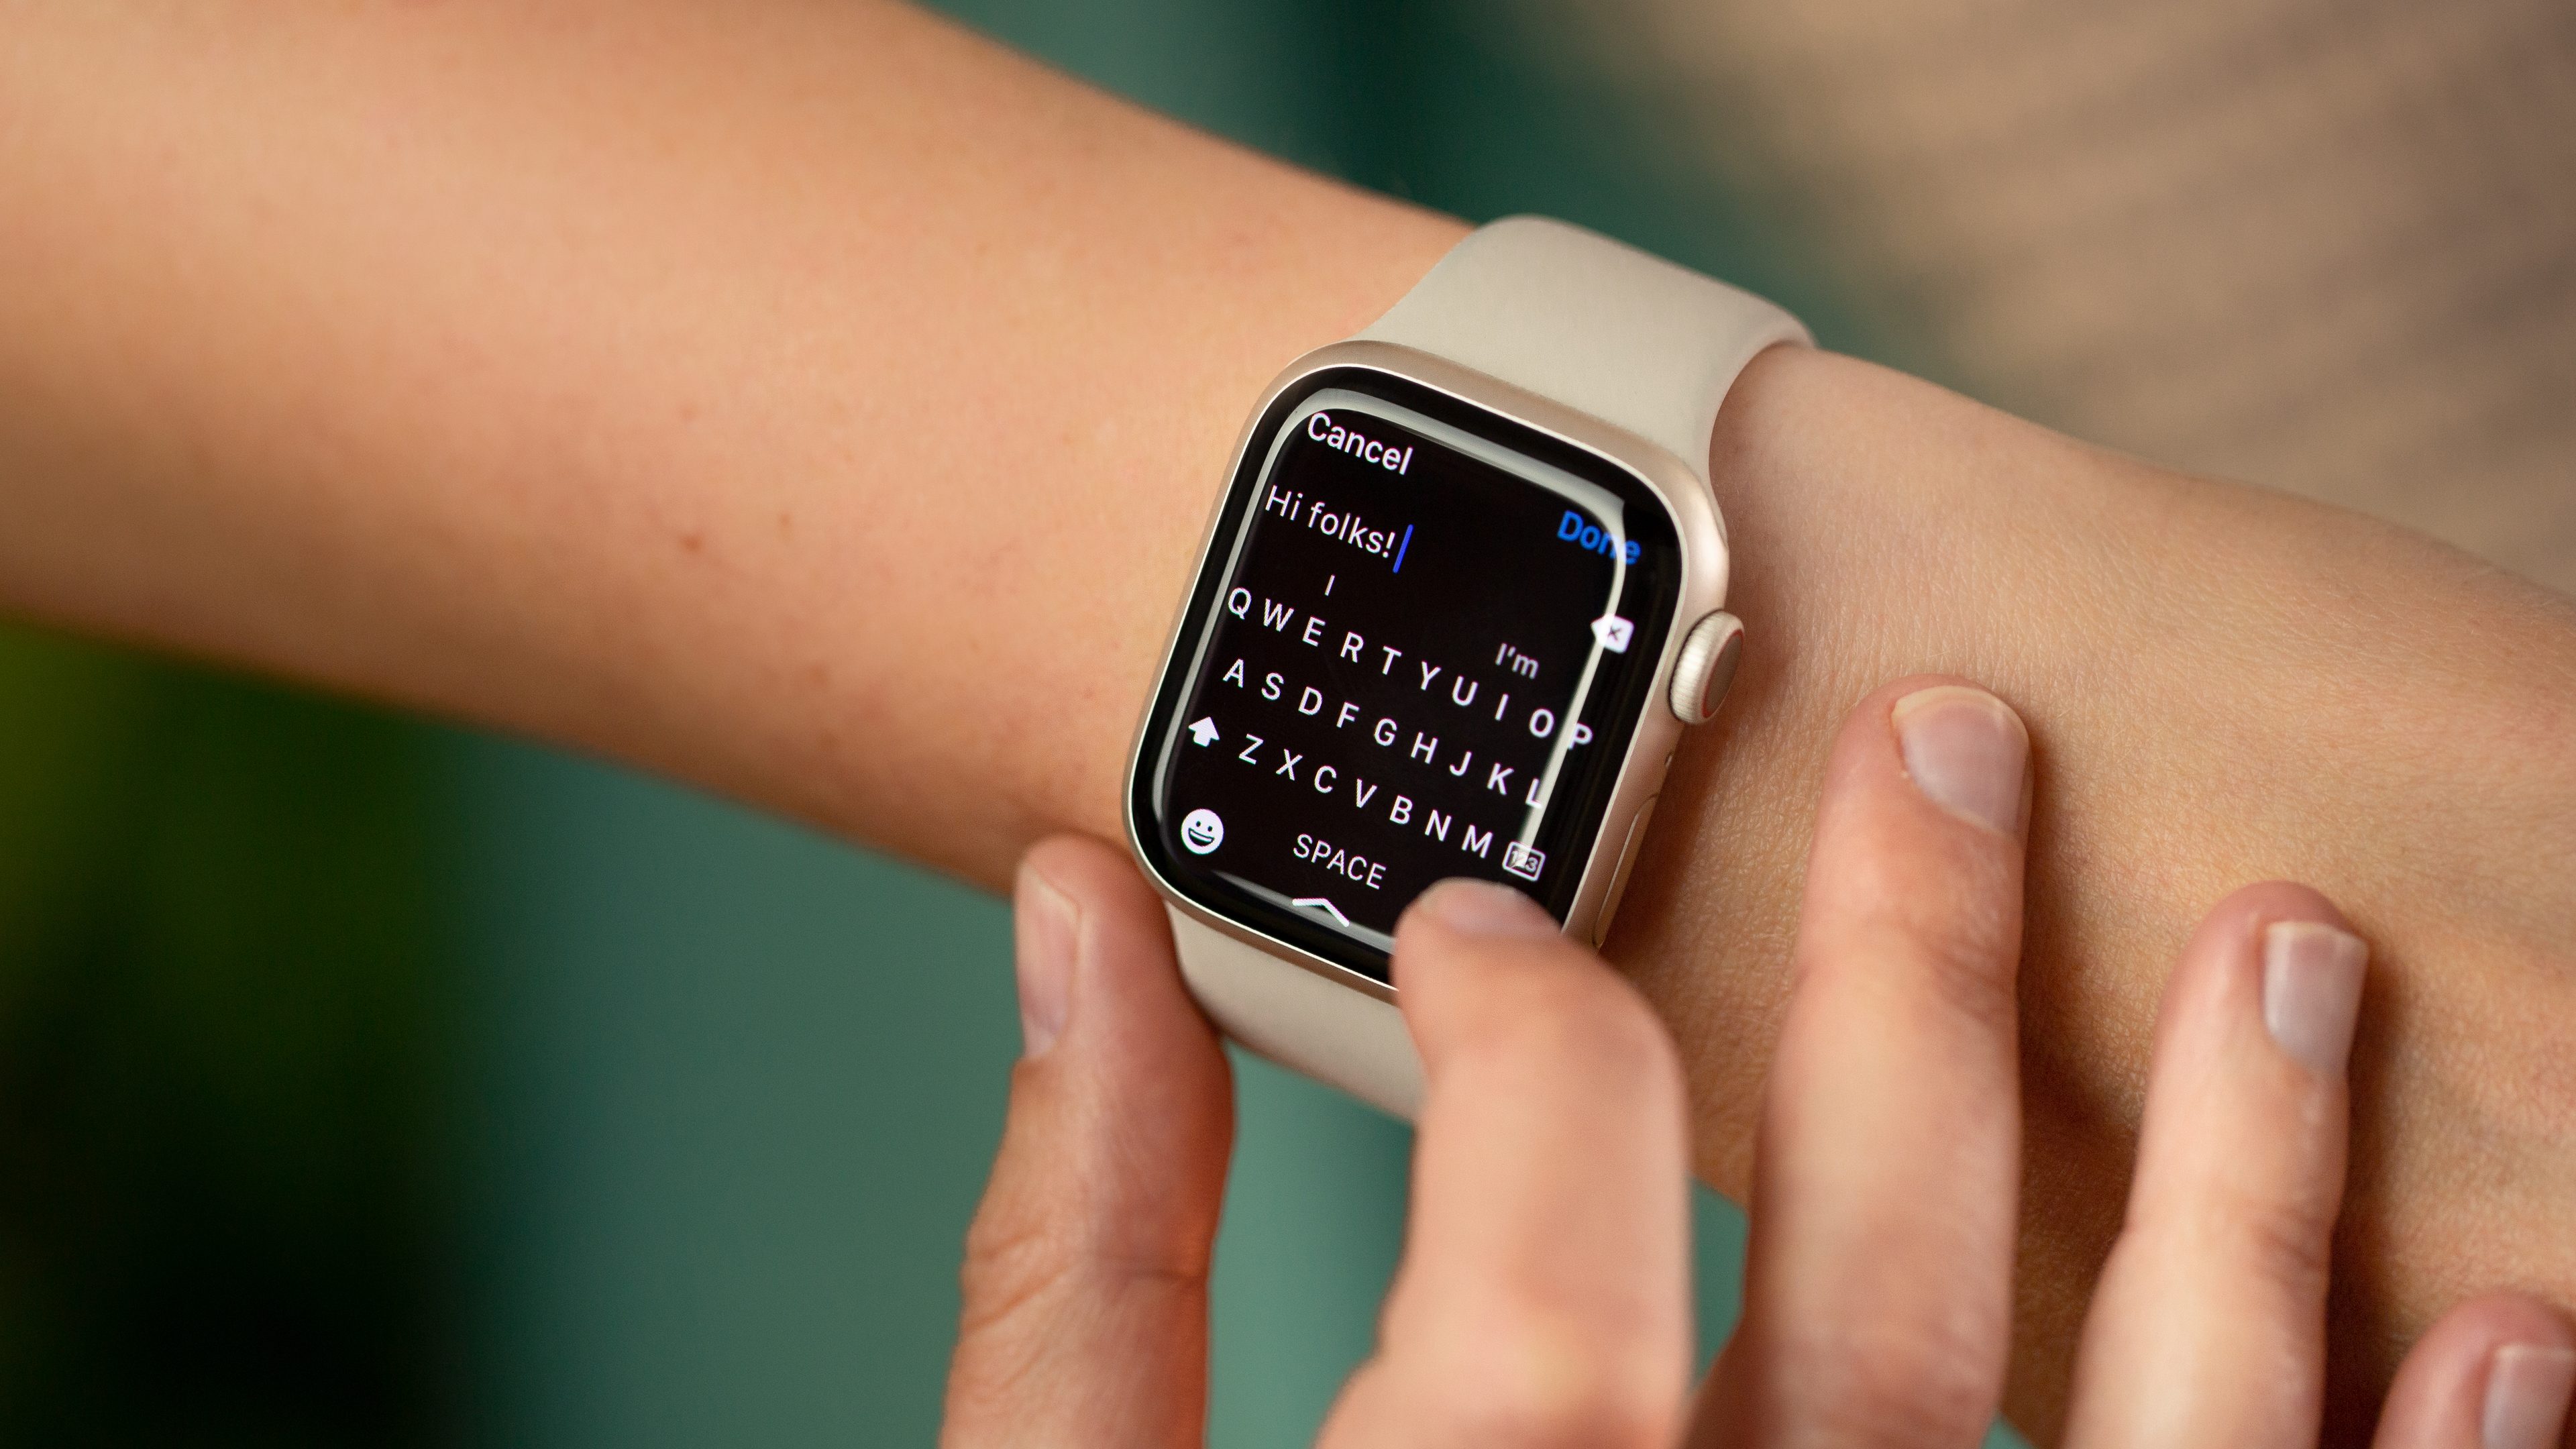 À propos de la charge rapide sur l'Apple Watch - Assistance Apple (CI)